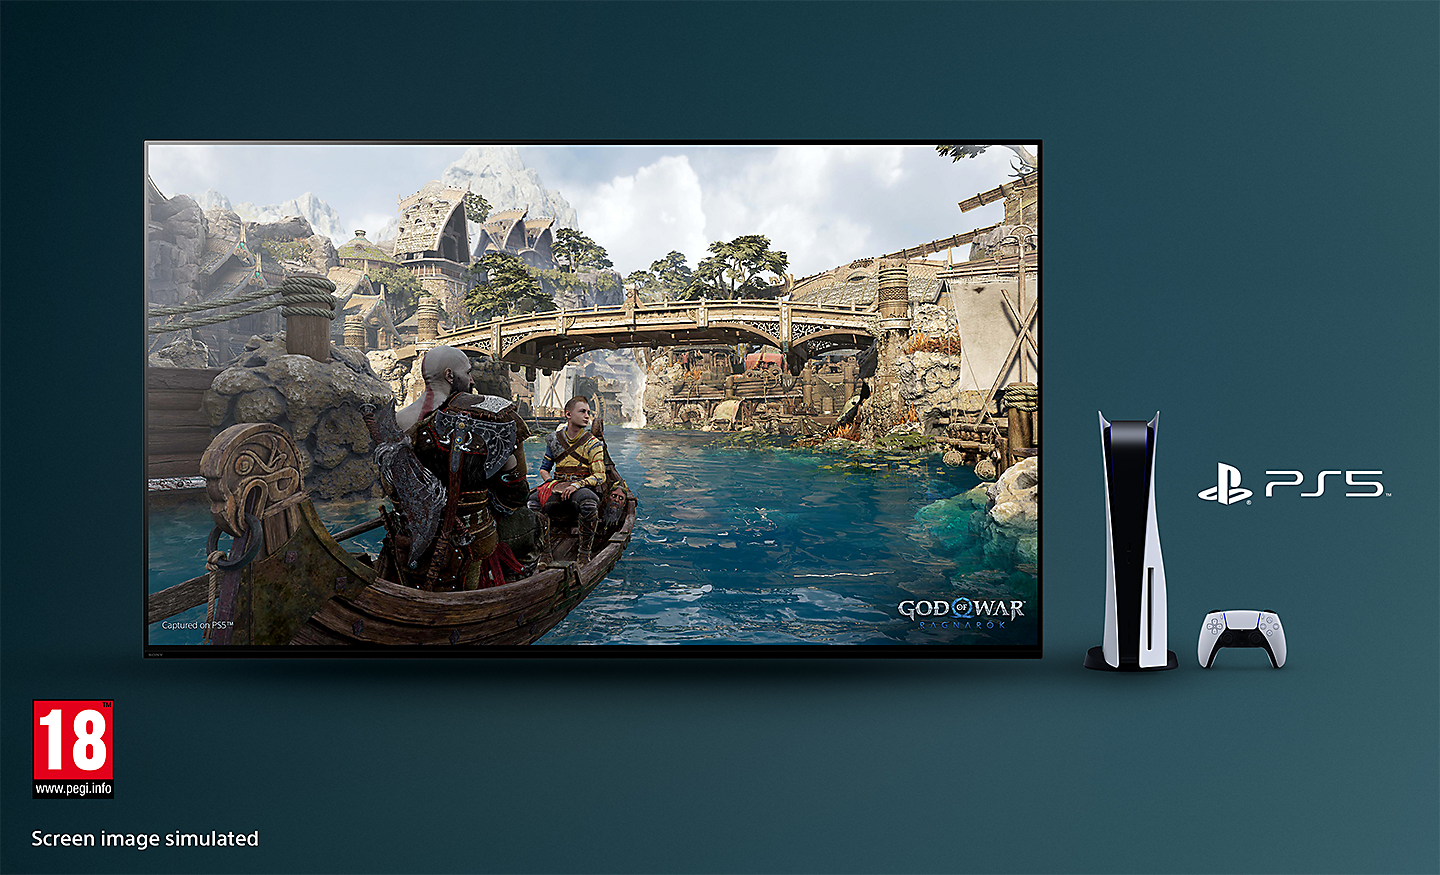 Телевизор BRAVIA със снимка на God of War: Ragnarok на лодка по река и мост на заден план с конзола PS5™, контролер и лого PS5™ вдясно от телевизора